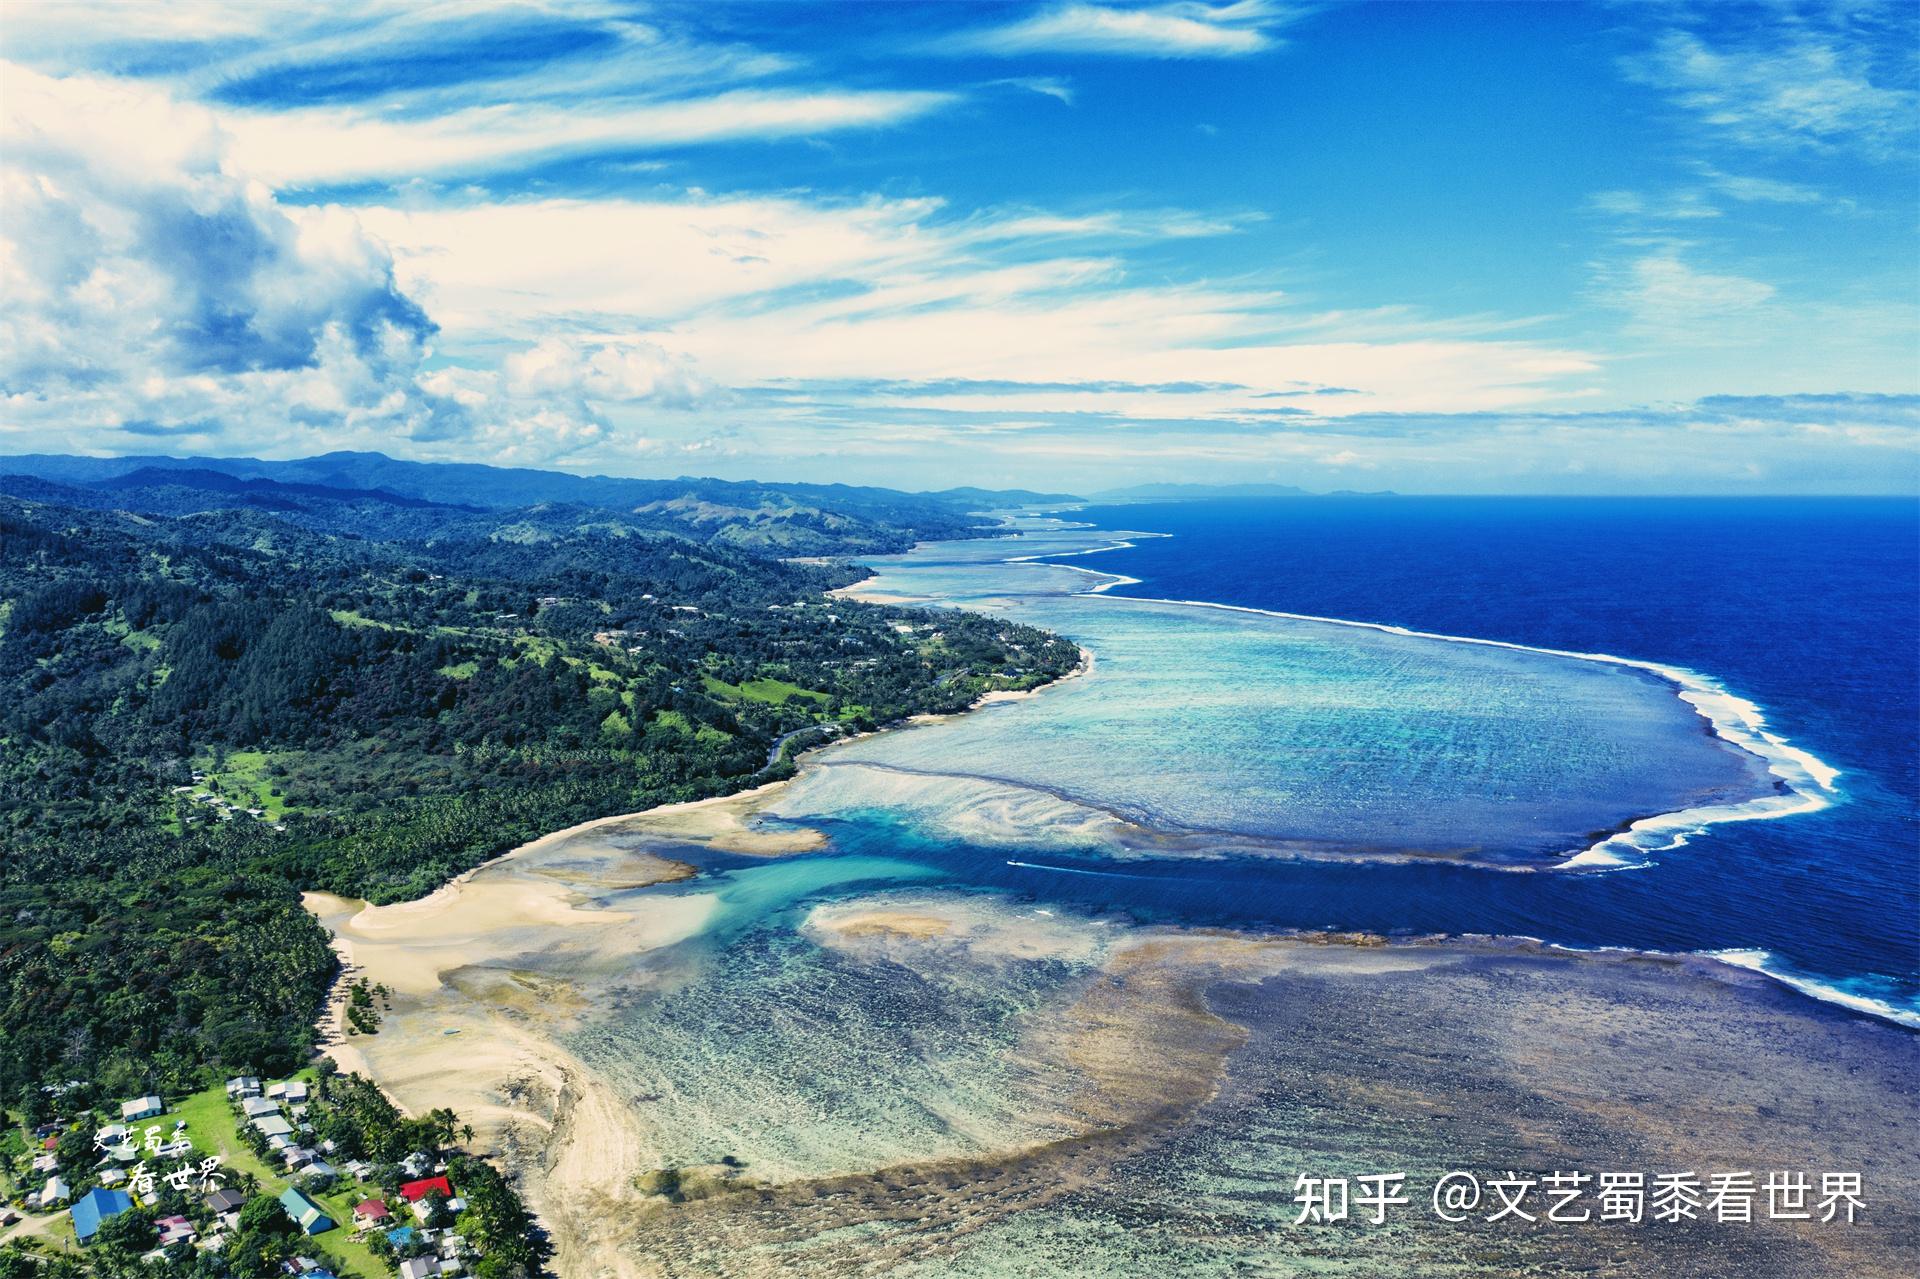 岸礁、堡礁和环礁构成斐济无与伦比的海底自然奇观